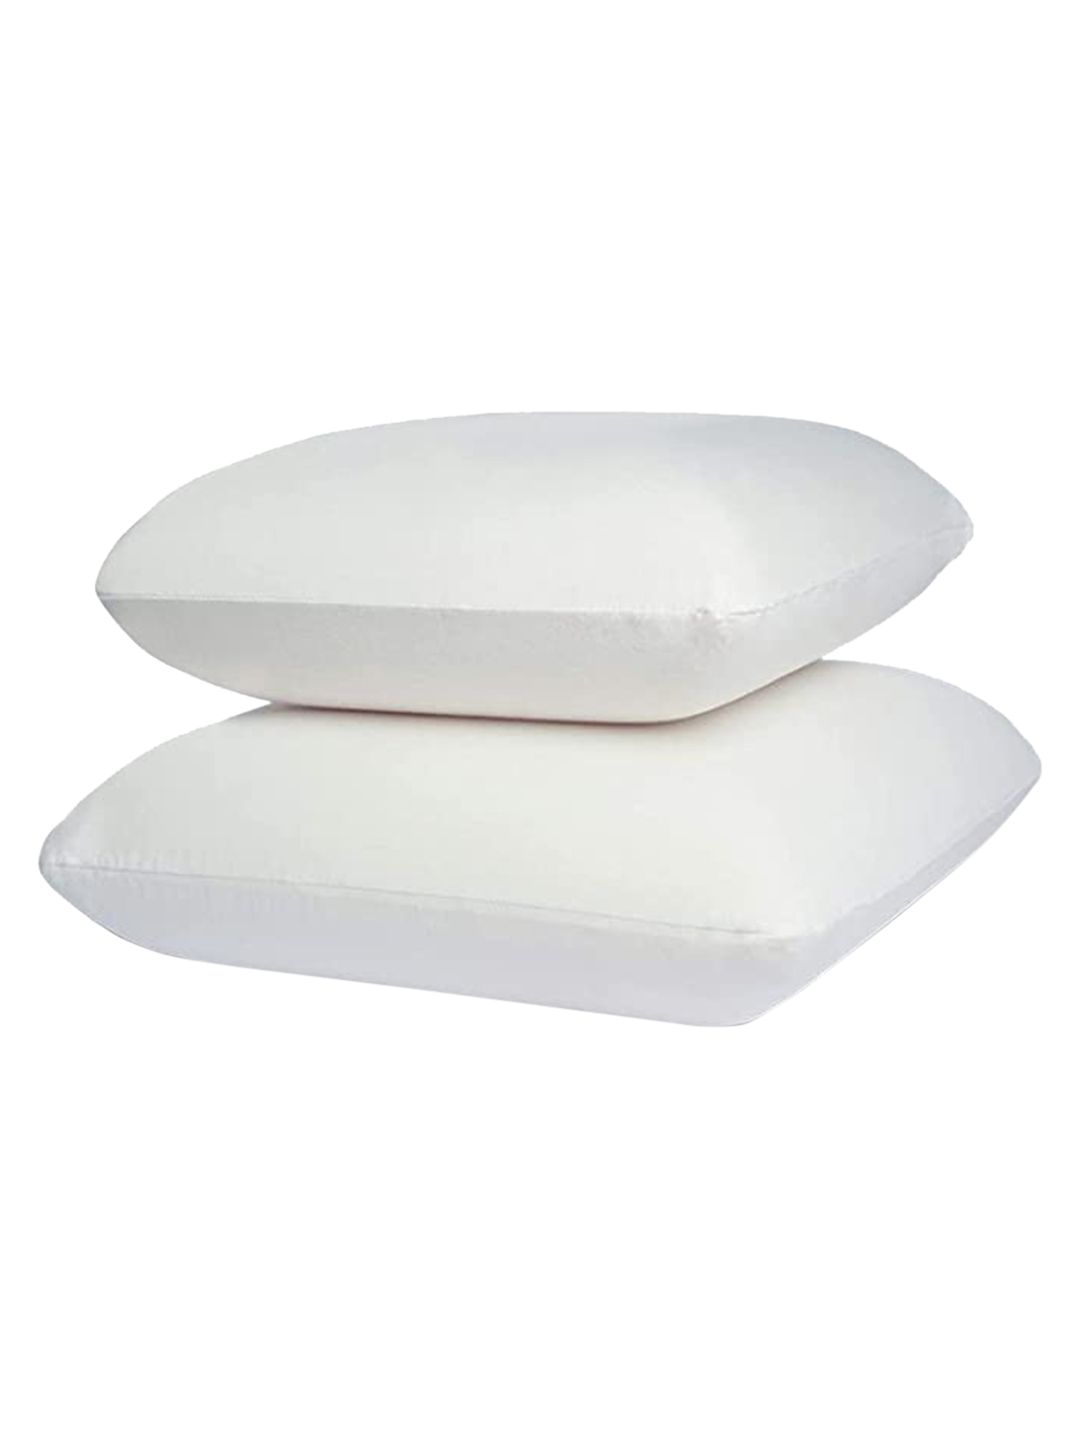 Sleepsia Set of 2 White Sleep Pillows Price in India